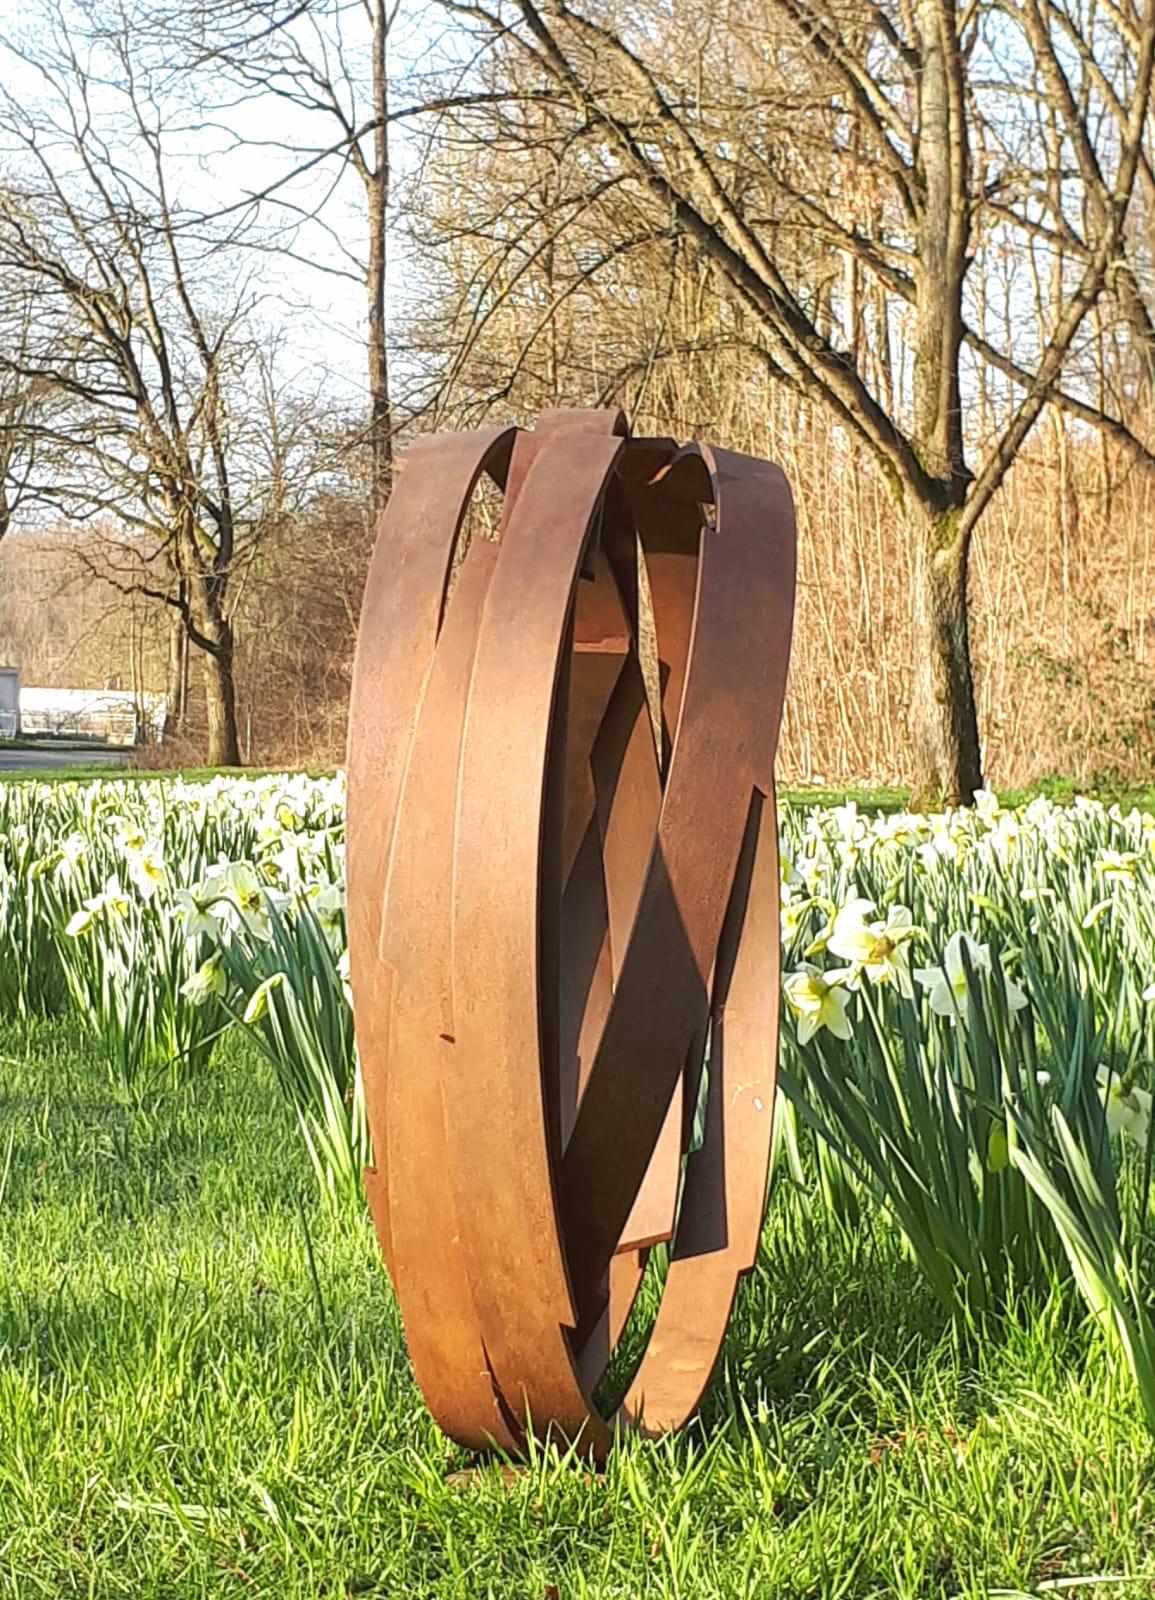 contemporary garden sculpture